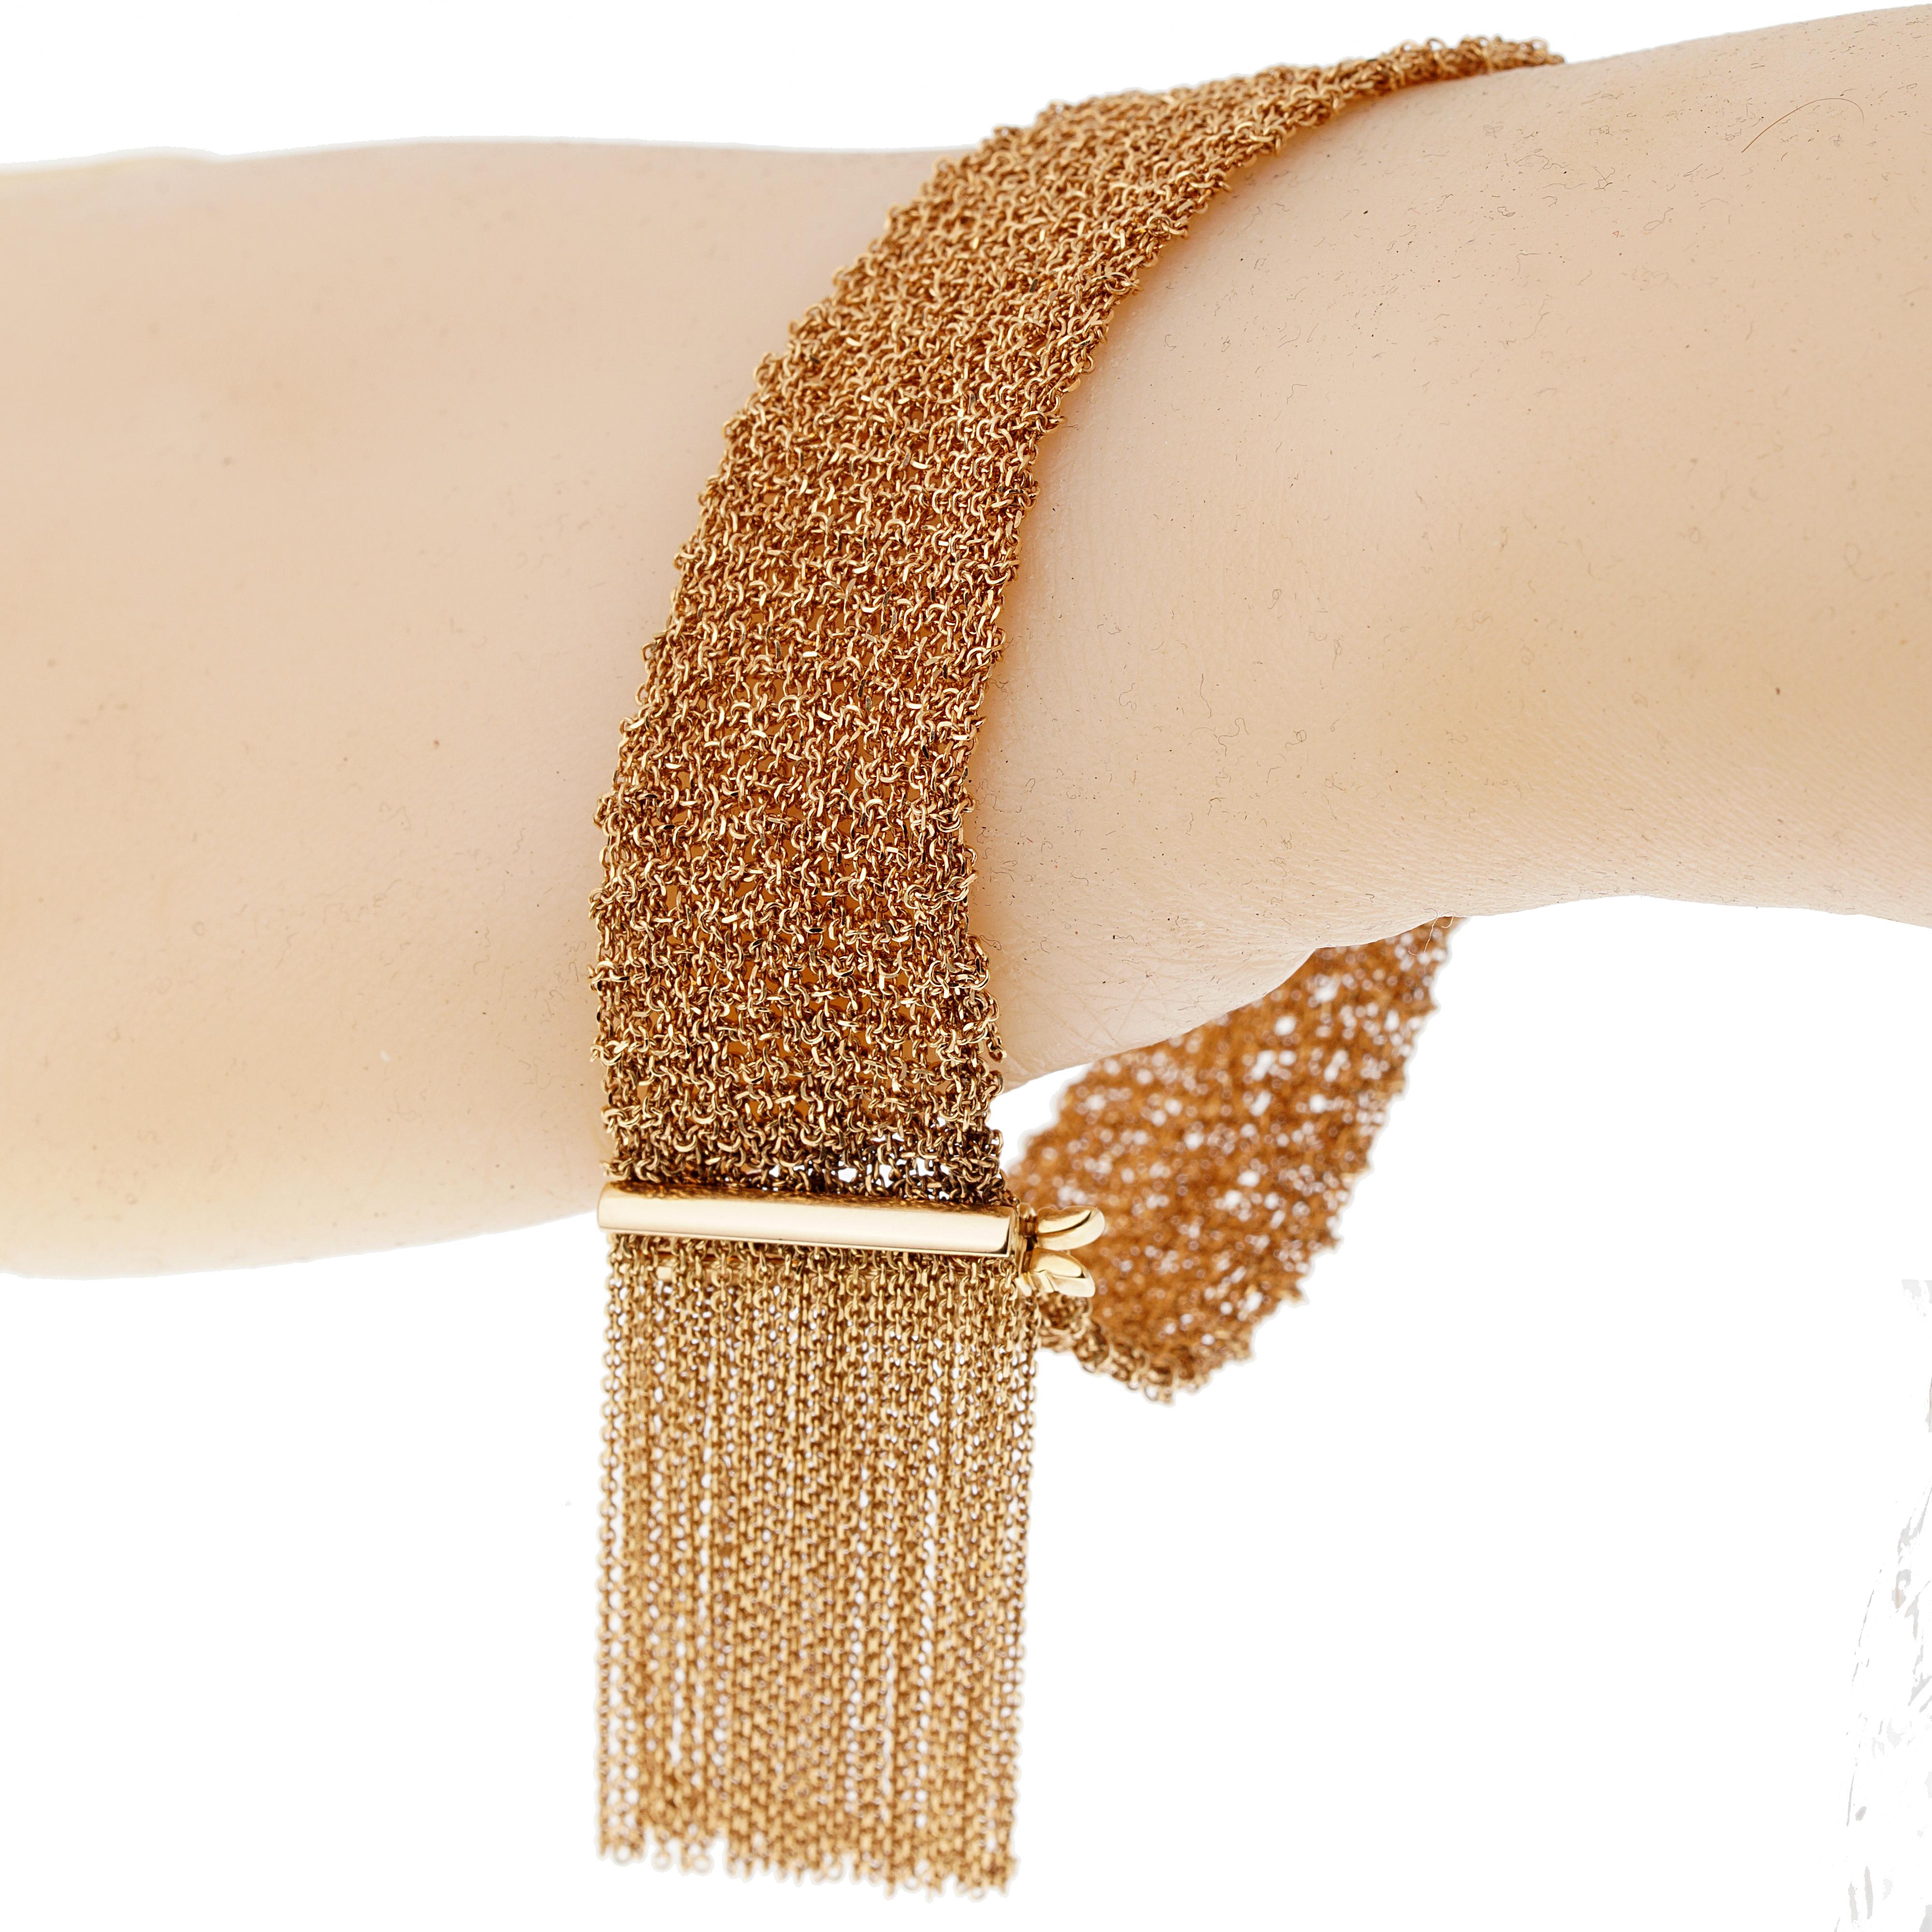 Le bracelet écharpe de Boucheron, incroyablement confortable, présente une fine chaîne à maillons, terminée par des franges serties d'or rose 18k, signée Boucheron et numérotée. Le bracelet a une longueur de 7